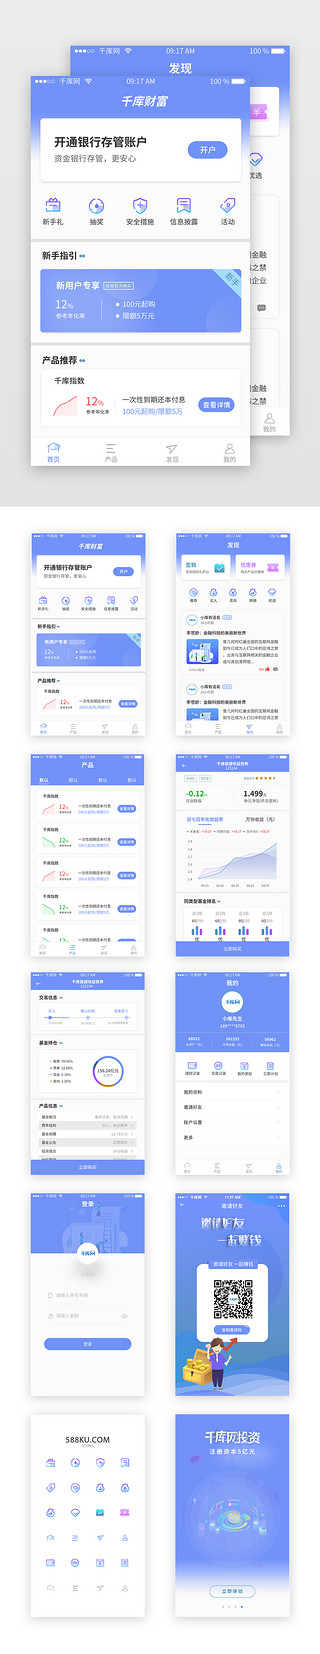 理财app套图UI设计素材_蓝色理财类APP套图